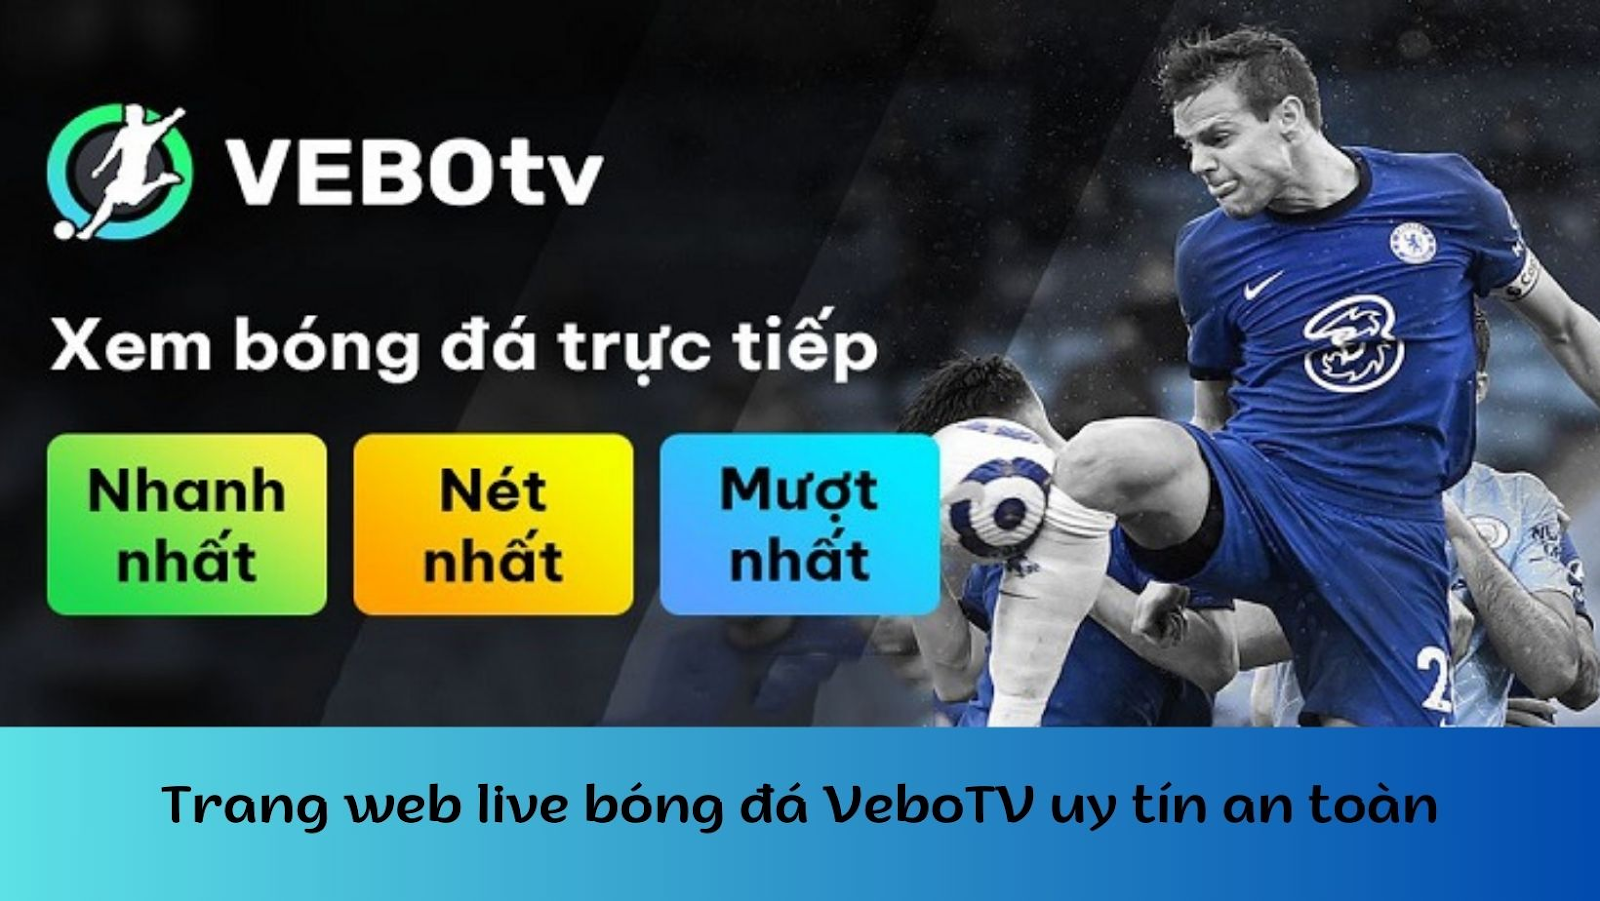 VeboTV - Kênh xem trực tiếp bóng đá miễn phí số 1 Việt Nam